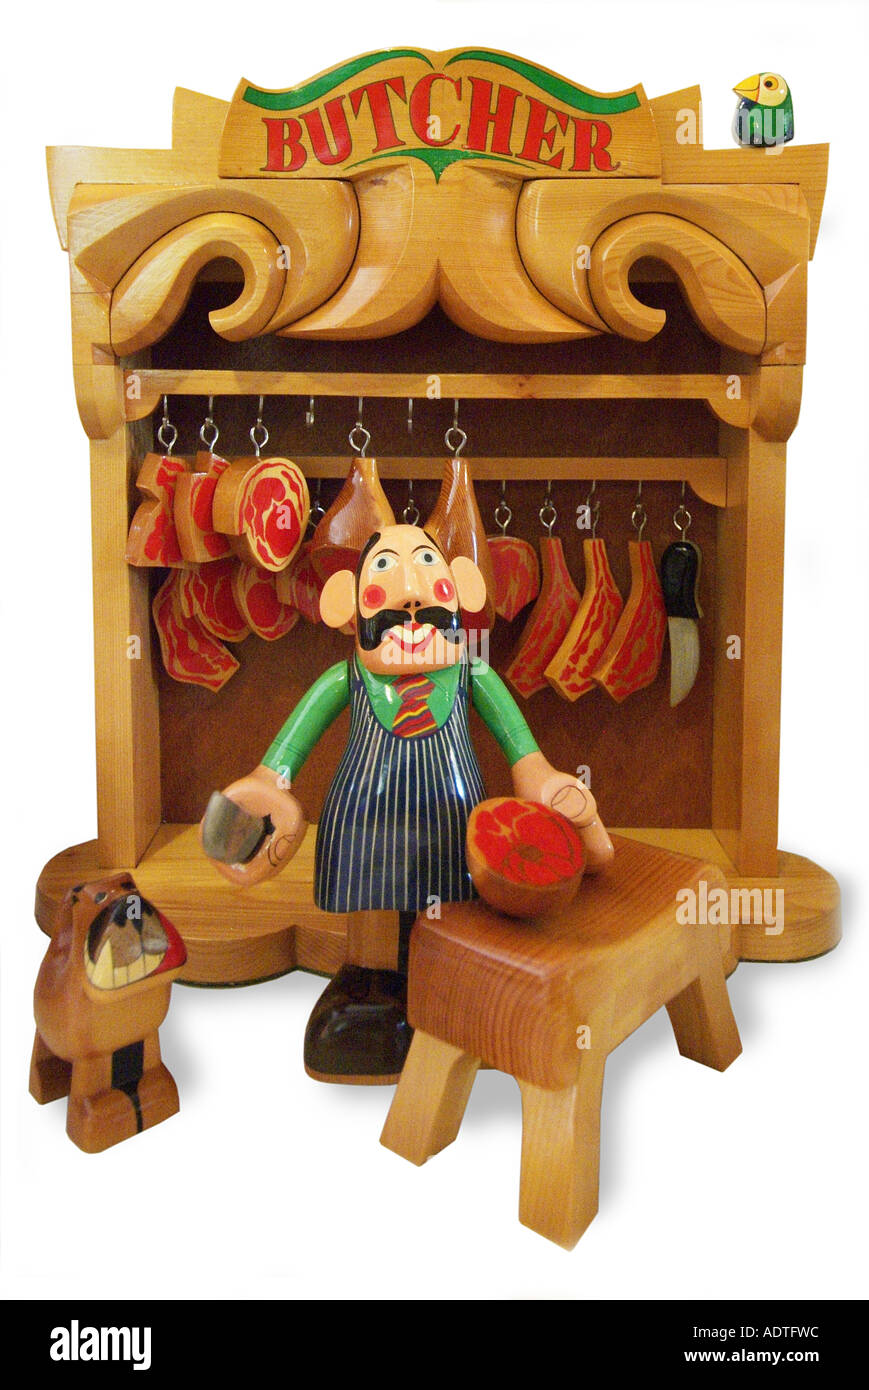 Jouet en bois bois boucherie chien viande cleaver du broyeur côté bloc jambe de boeuf jambon England UK Royaume-Uni GB Banque D'Images